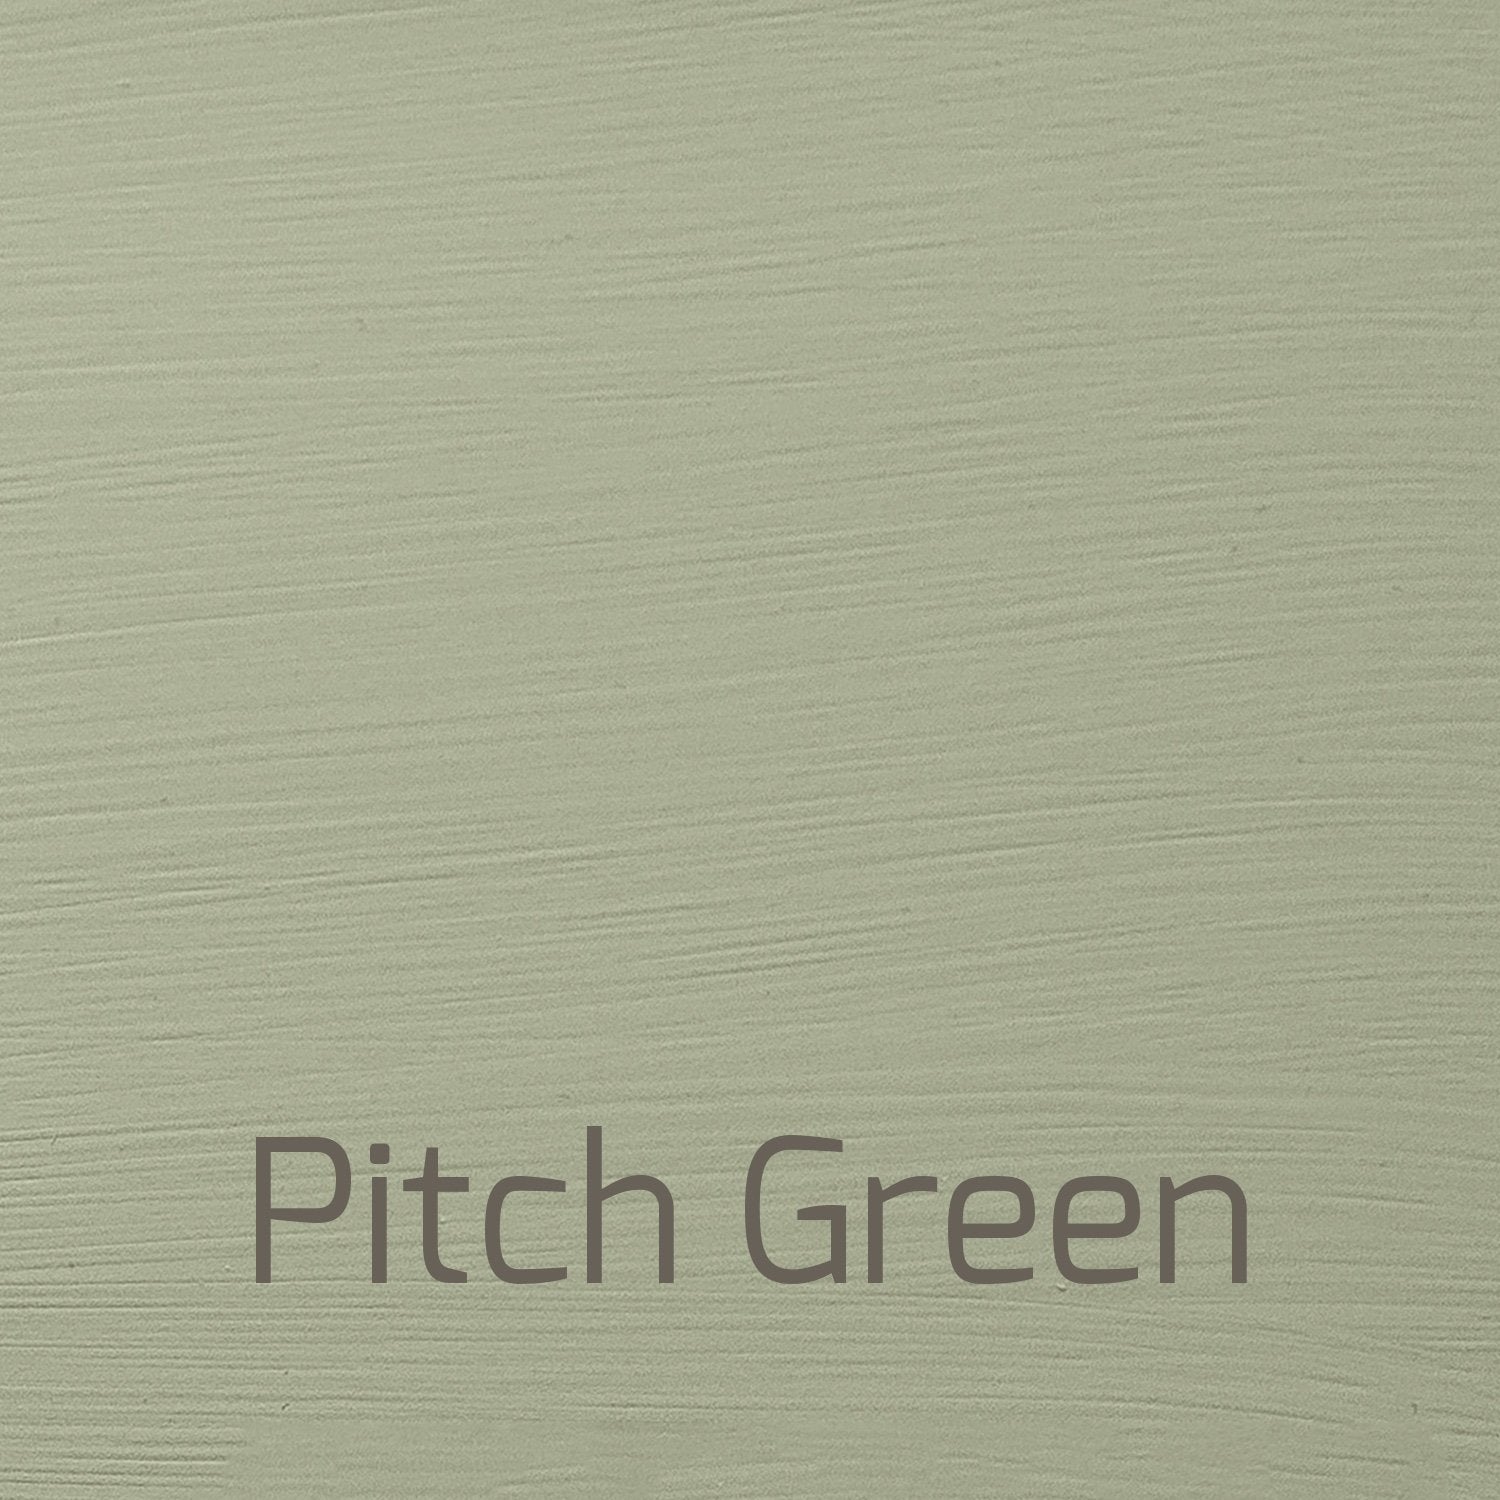 Pitch Green - Versante Matt-Versante Matt-Autentico Paint Online